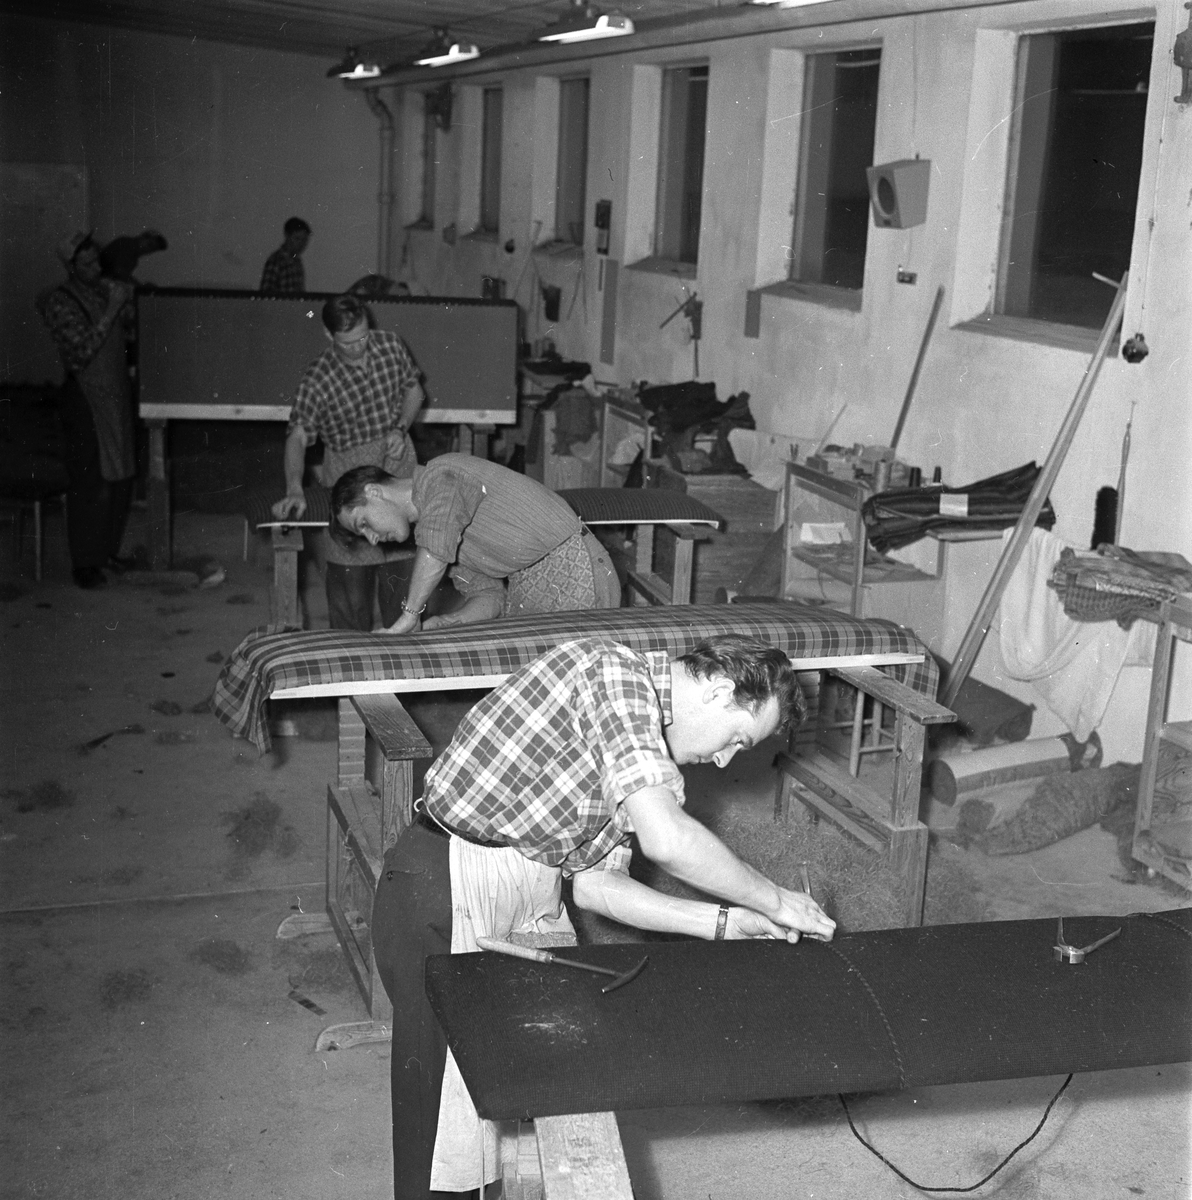 Storvreta möbelindustri, Stovreta, Uppland, november 1955